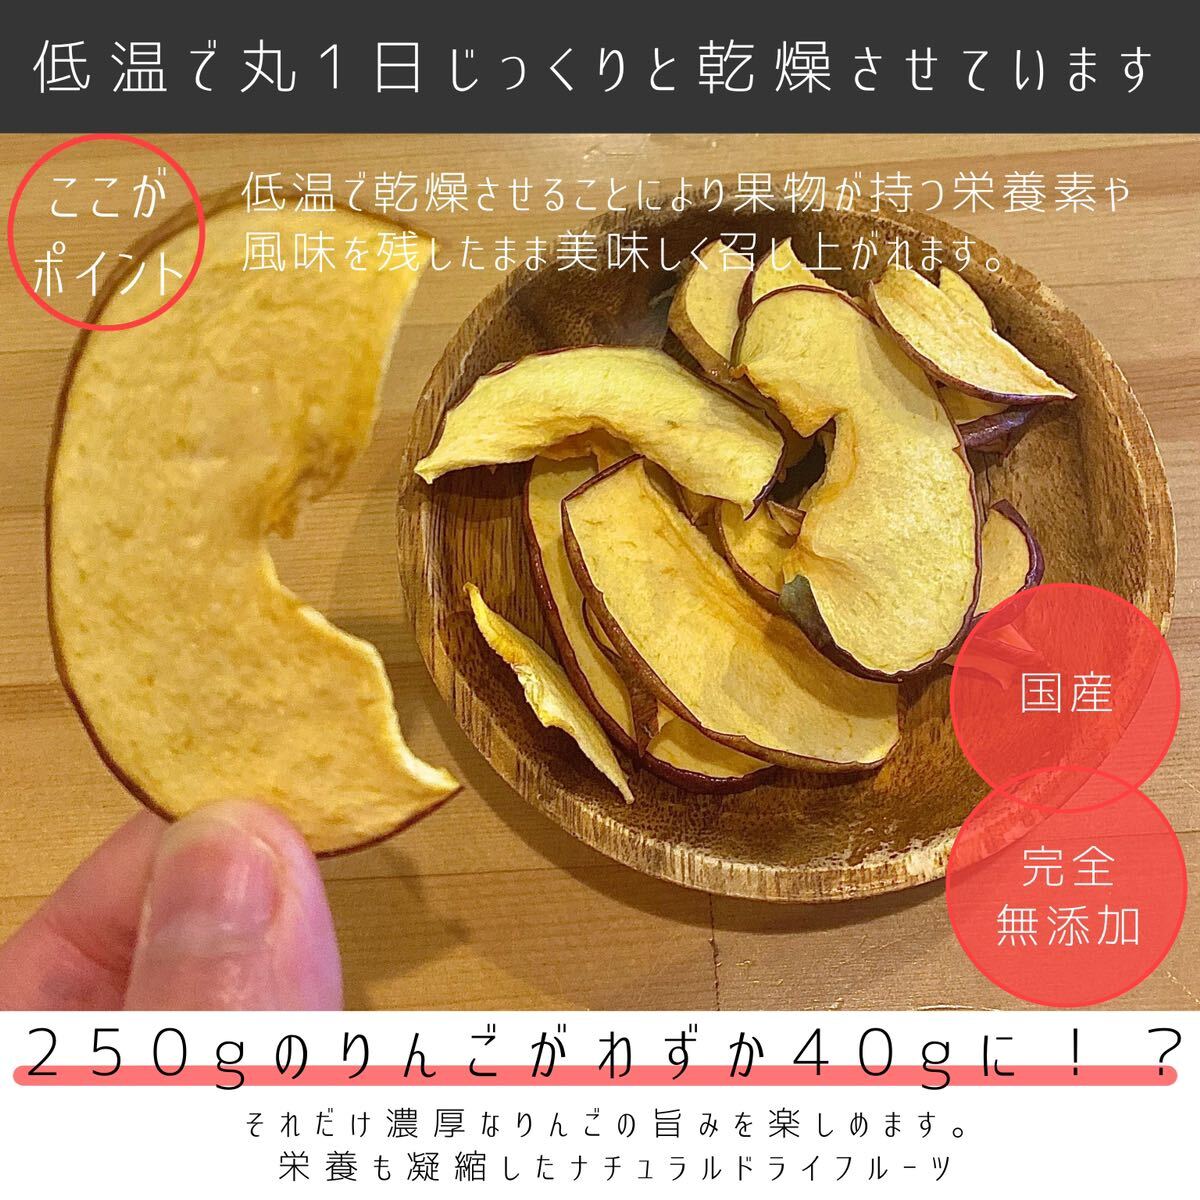 [3 пакет ] Aomori префектура производство яблоко chip s солнечный ..120g без добавок сухофрукт dry яблоко яблоко chip s сахар не использование 